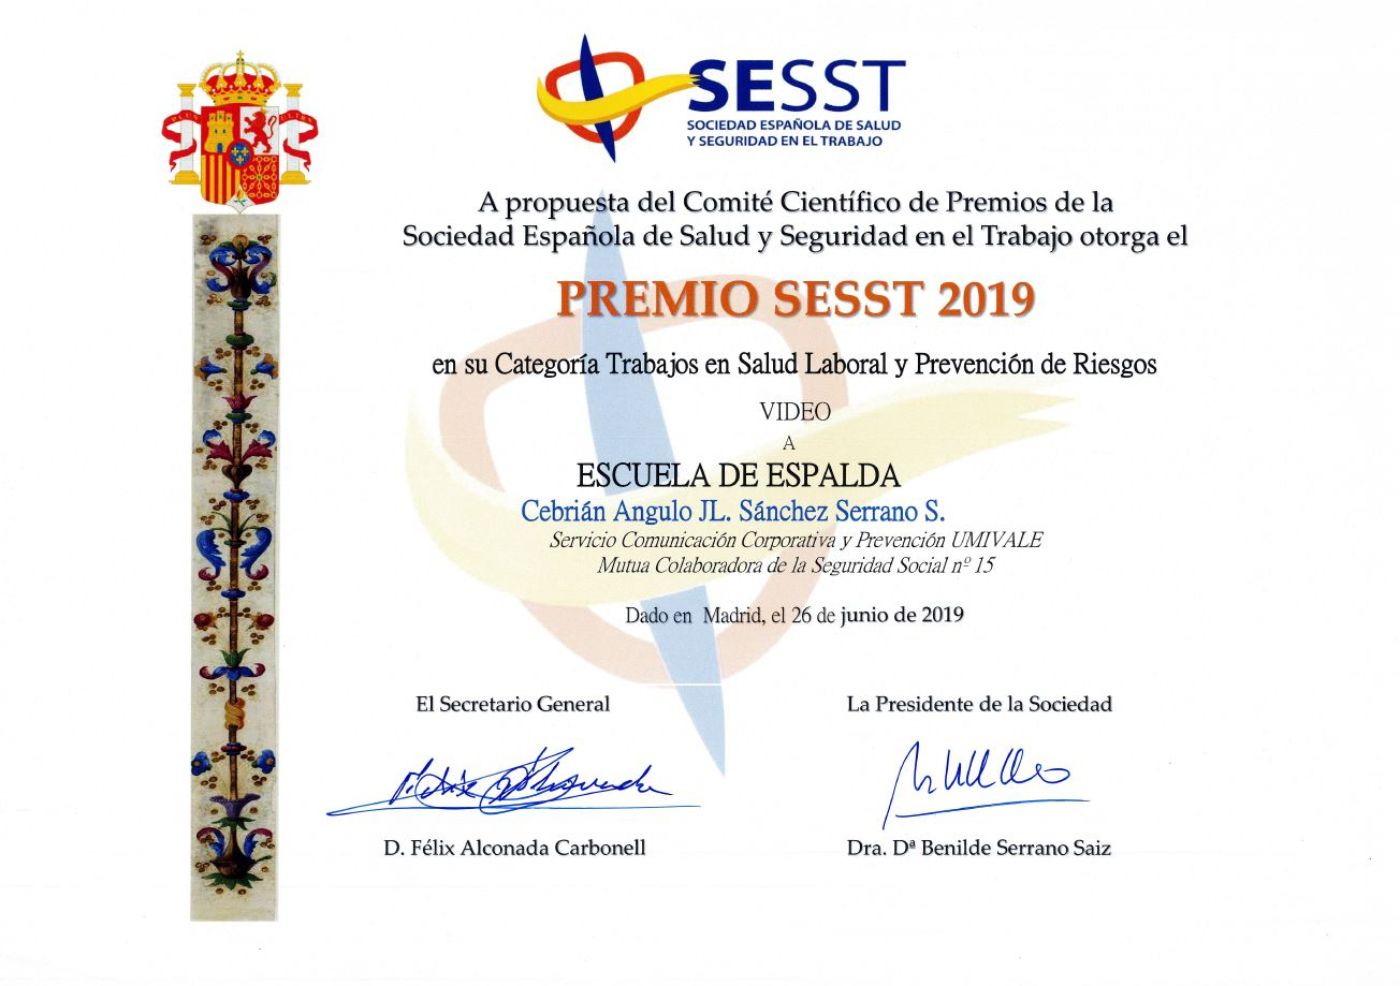 Premio de la SESST por la campaña audiovisual “Escuela de Espalda”